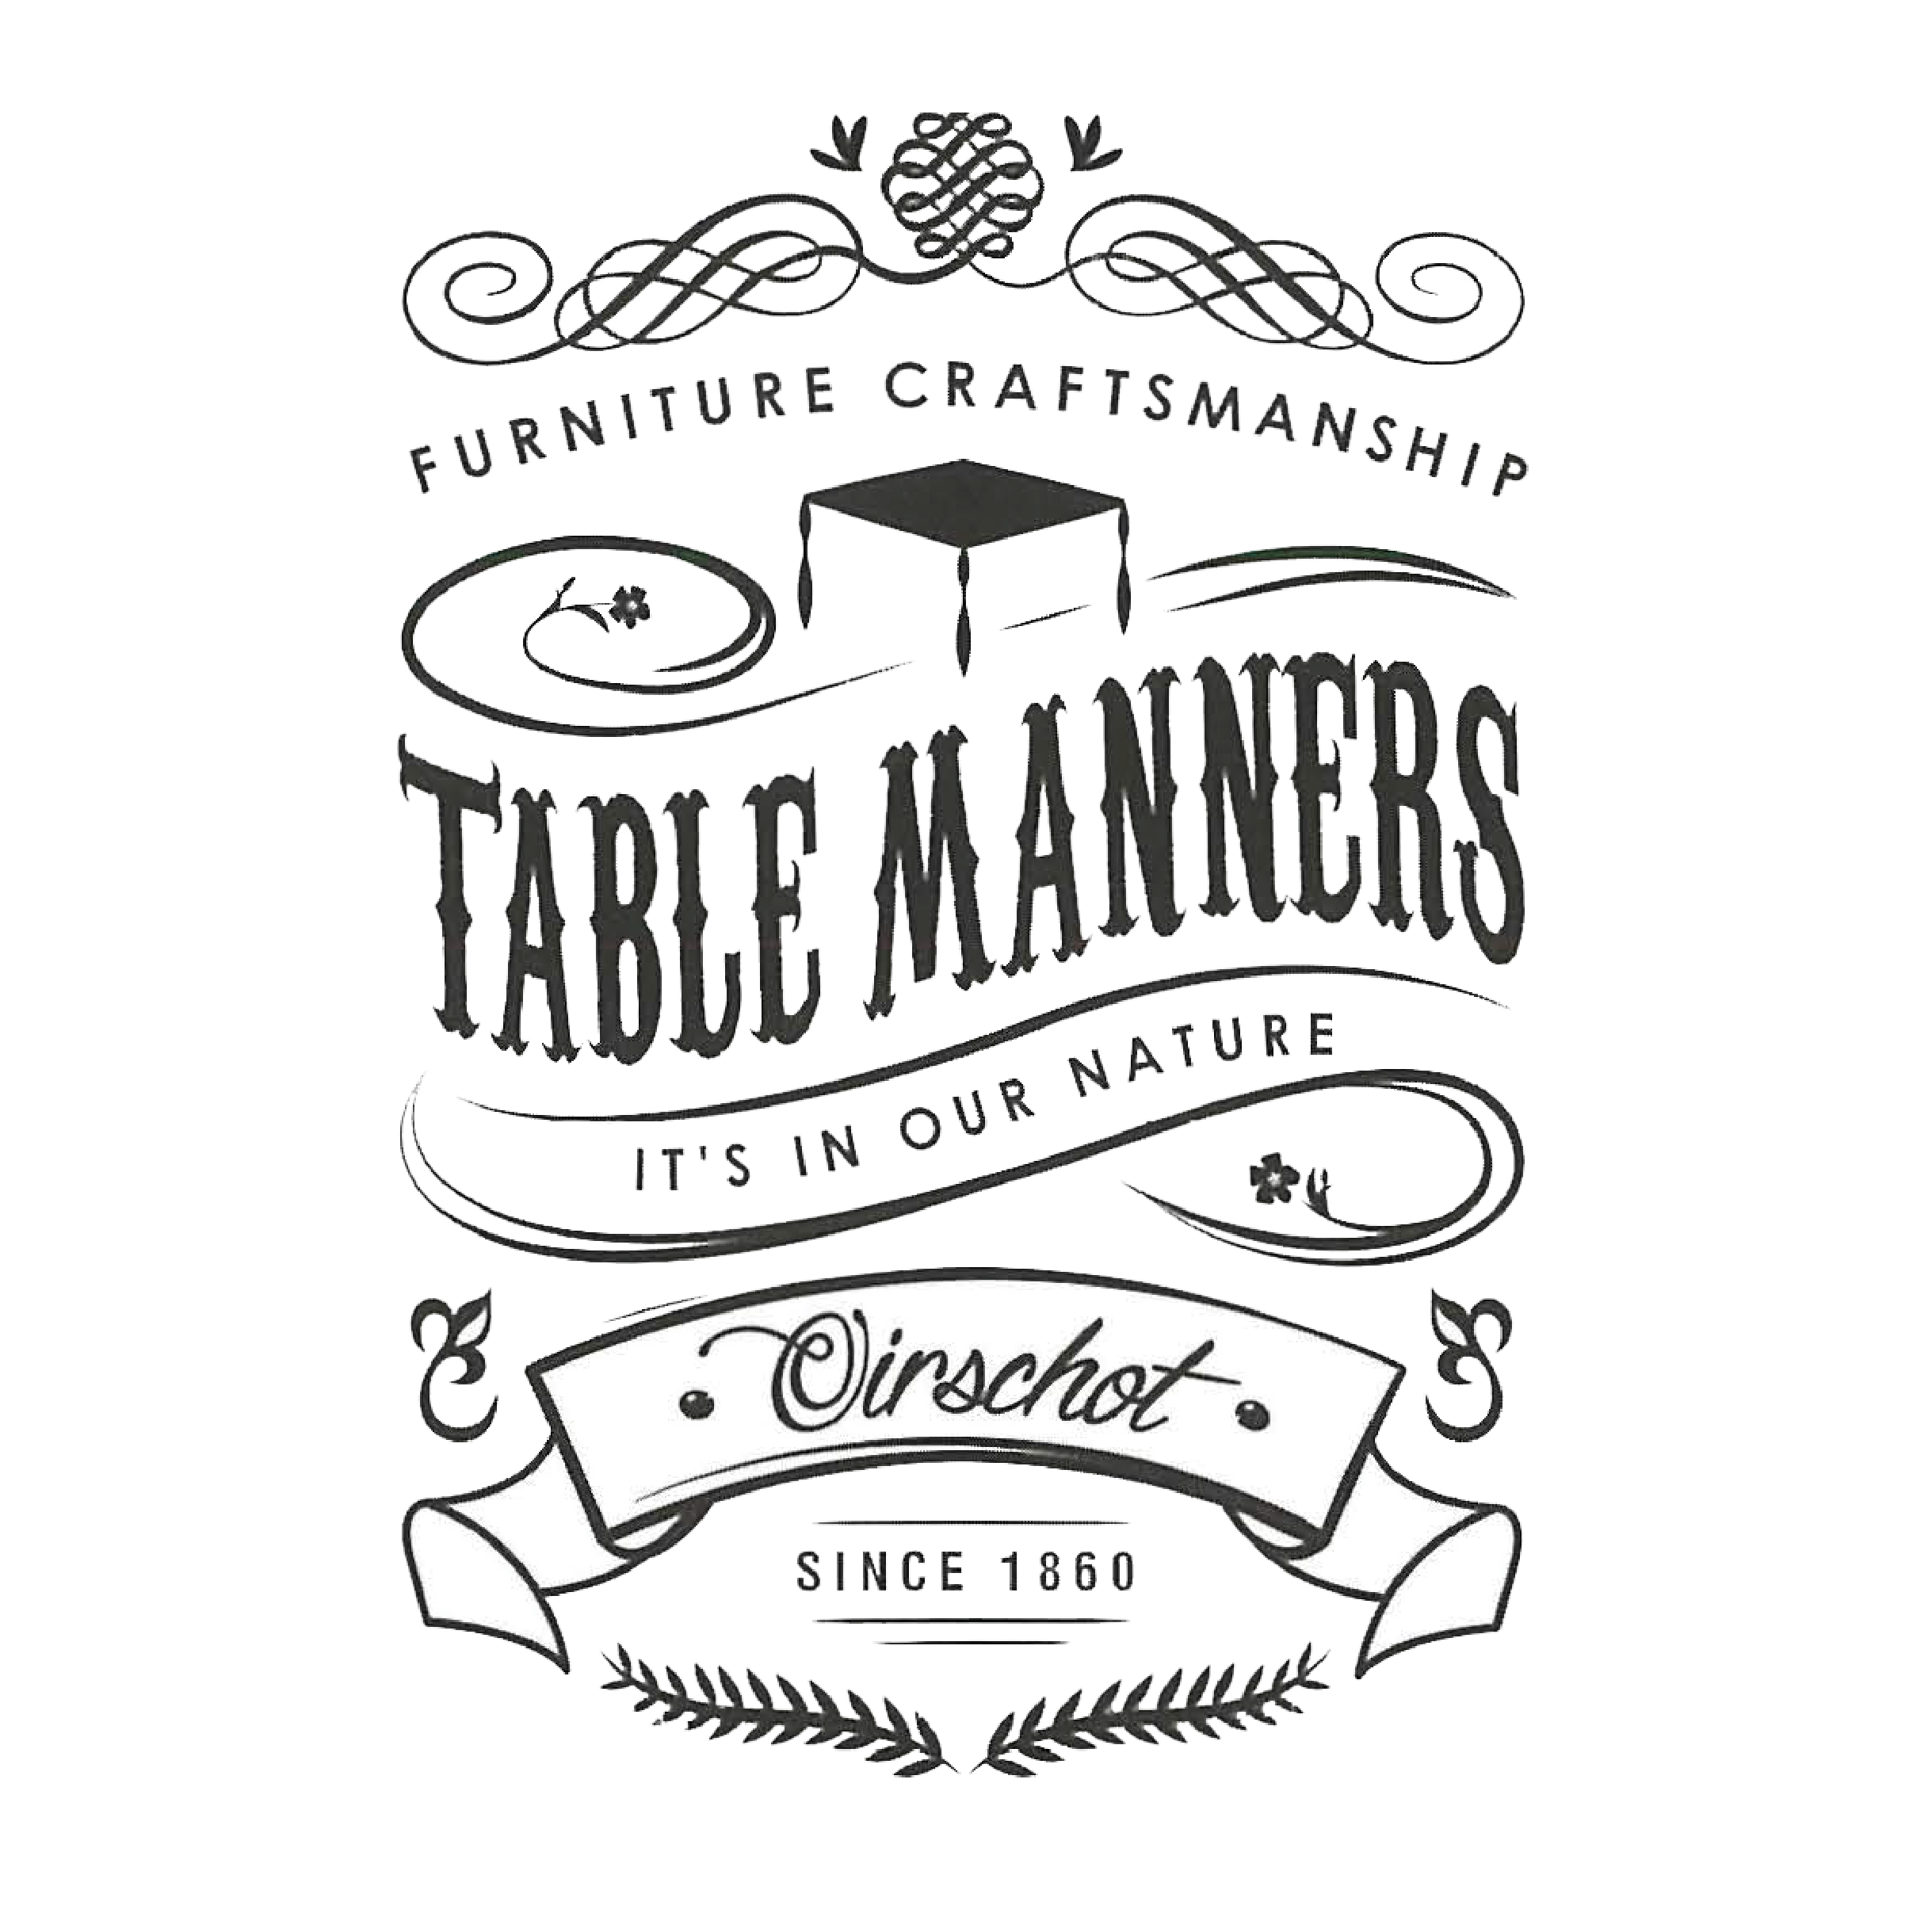 Table Manners bij Groter in Wonen